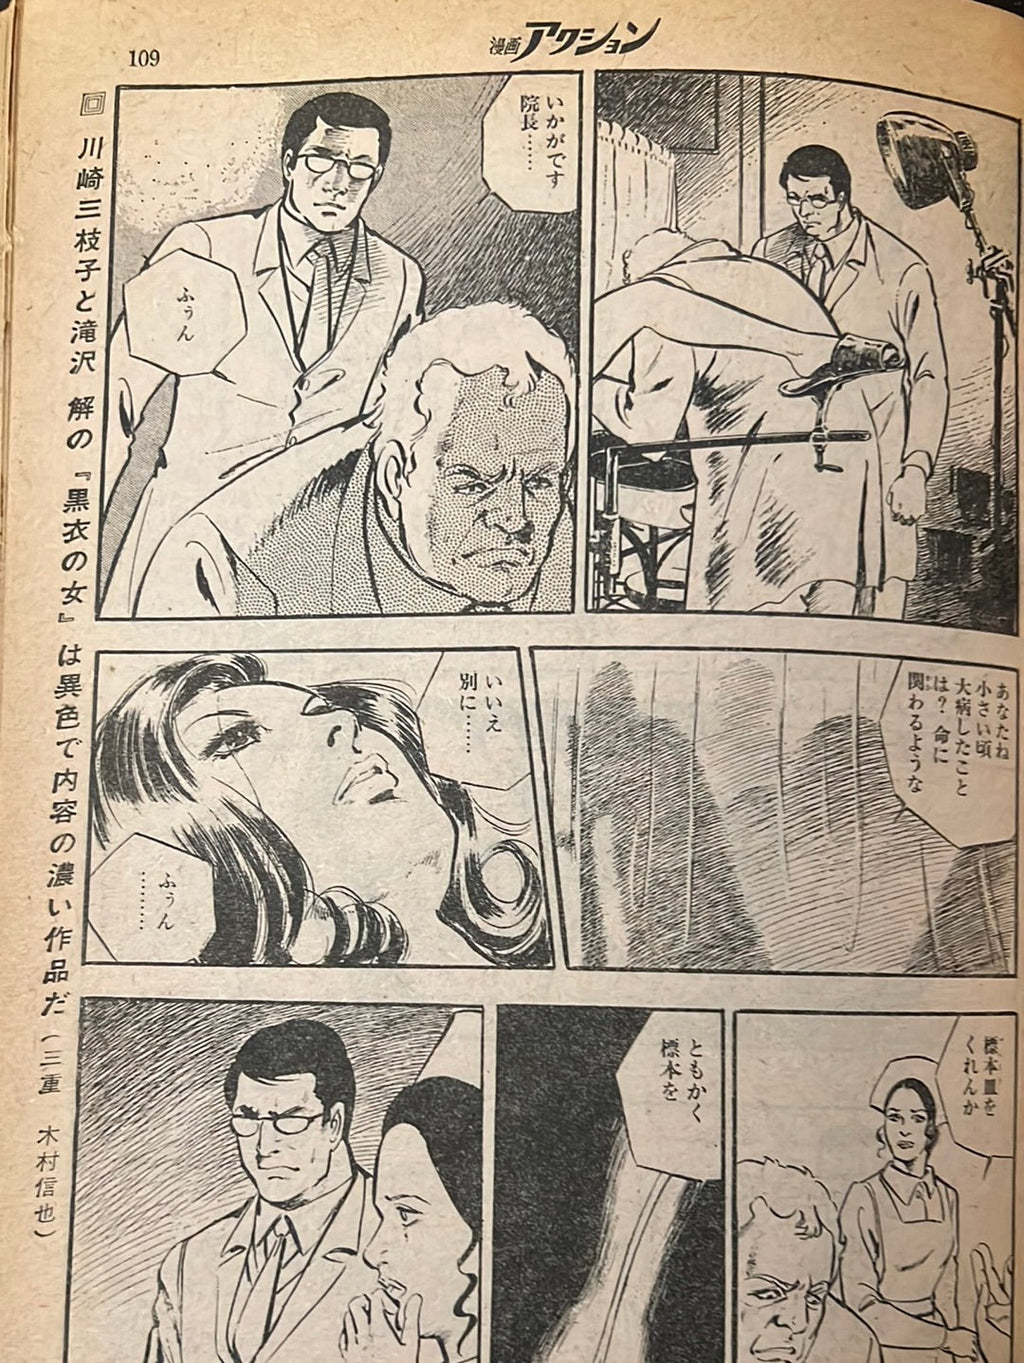 週間漫画アクション Weekly Manga Action No. 12 1974 Mar 28 USA SELLER